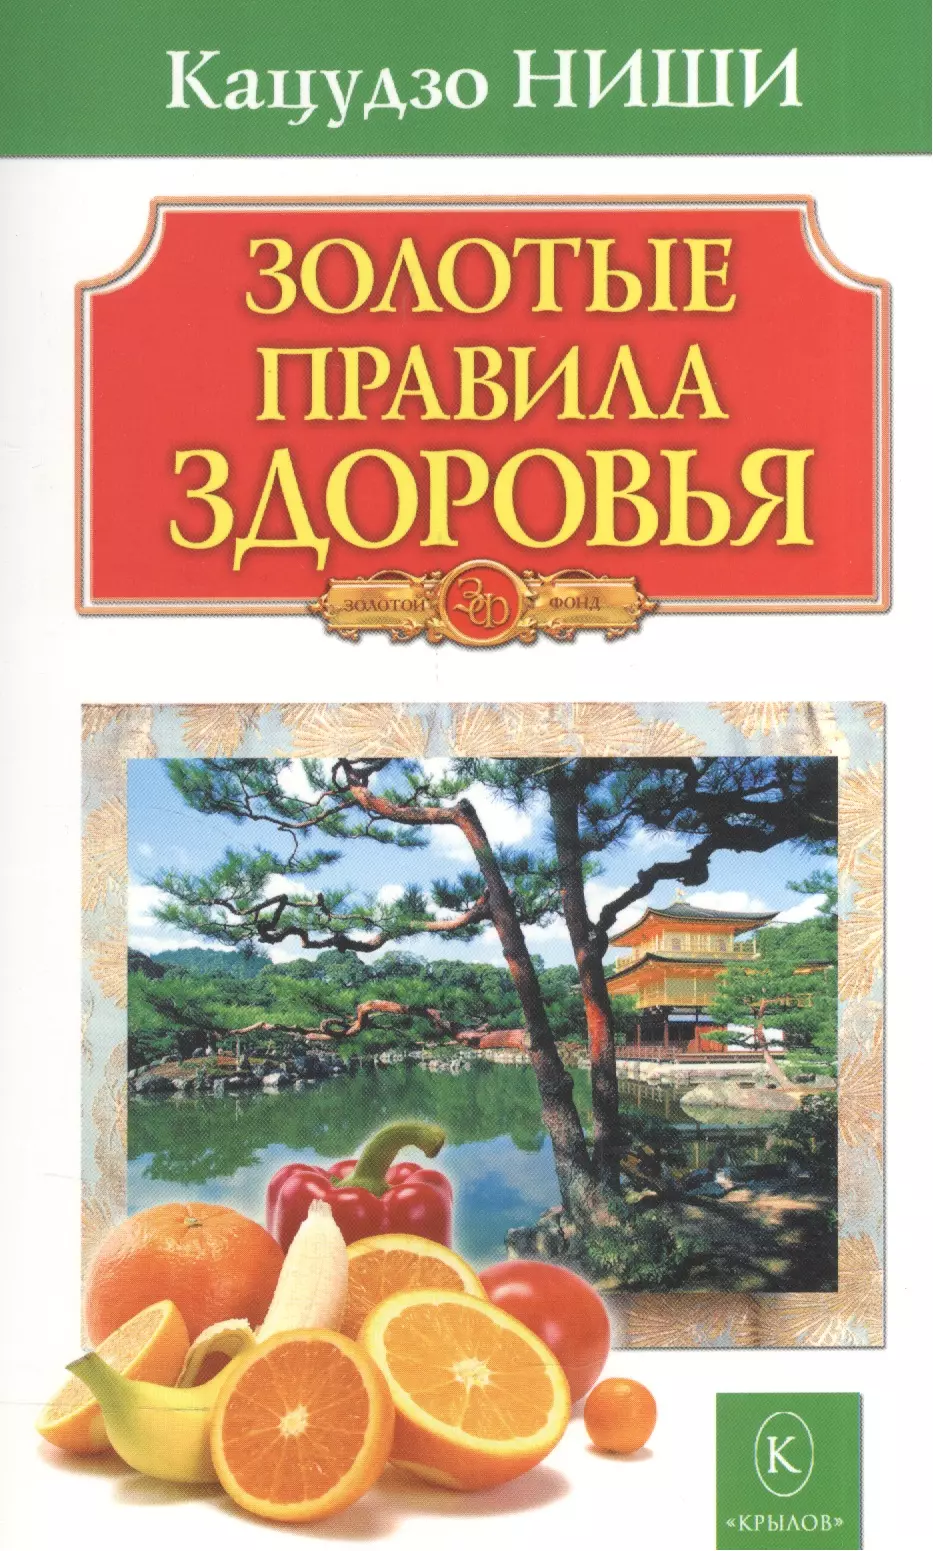 ниши кацудзо золотые настрои Ниши Кацудзо Золотые правила здоровья 16-е изд.